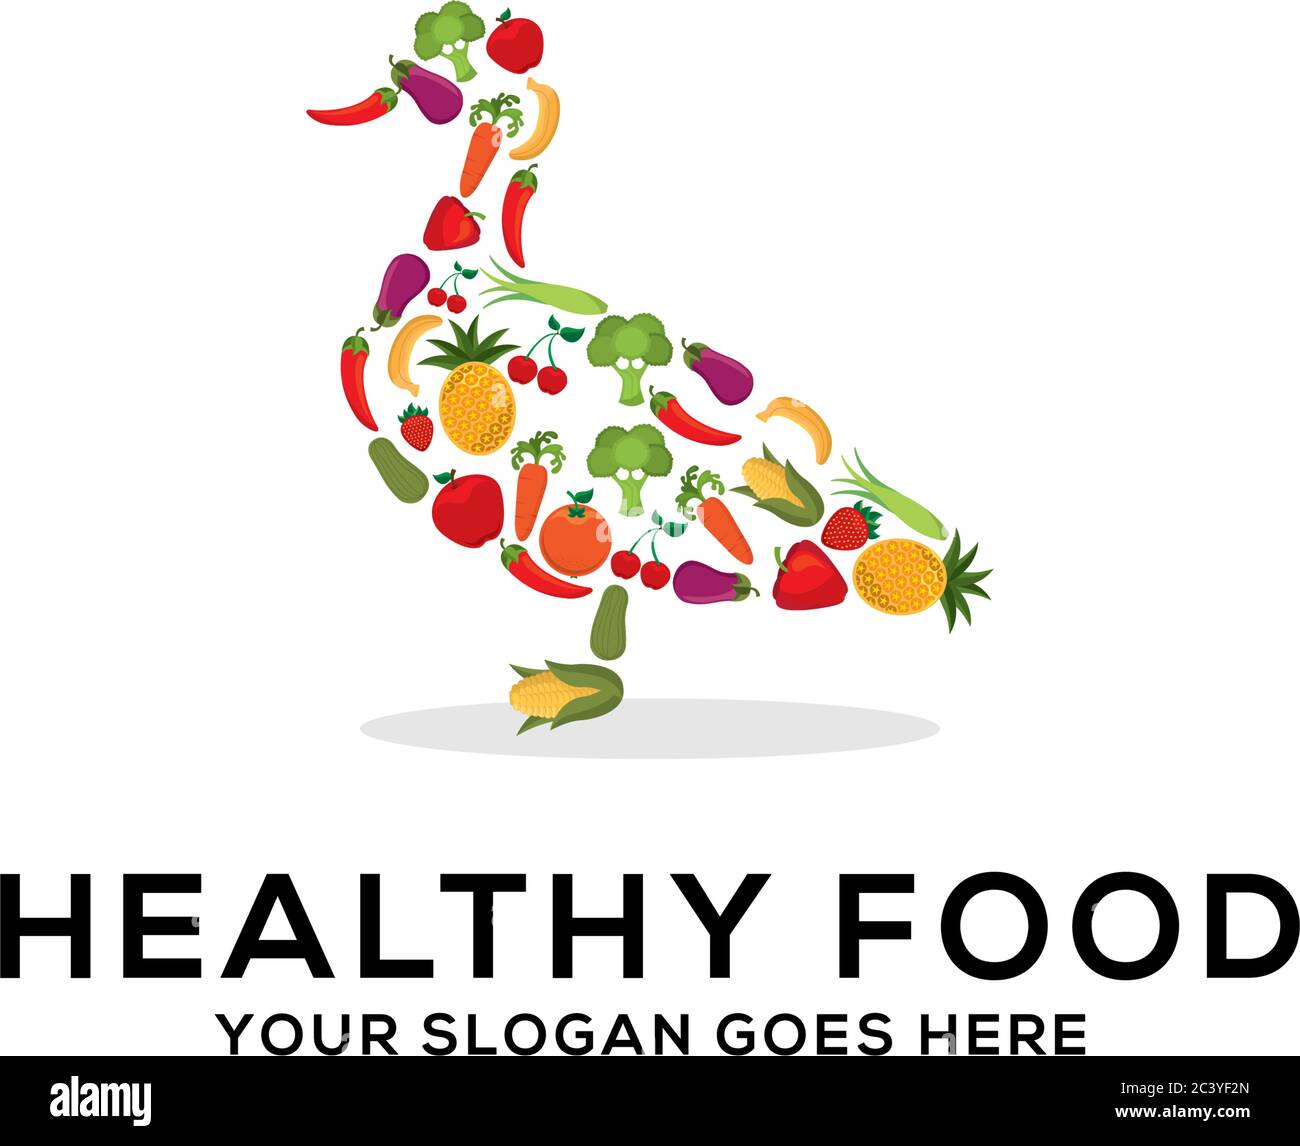 Gesunde Lebensmittel Logo Design Vektor, frisches Obst und Gemüse Zeichnung Kuh abstrakte Illustration Stock Vektor